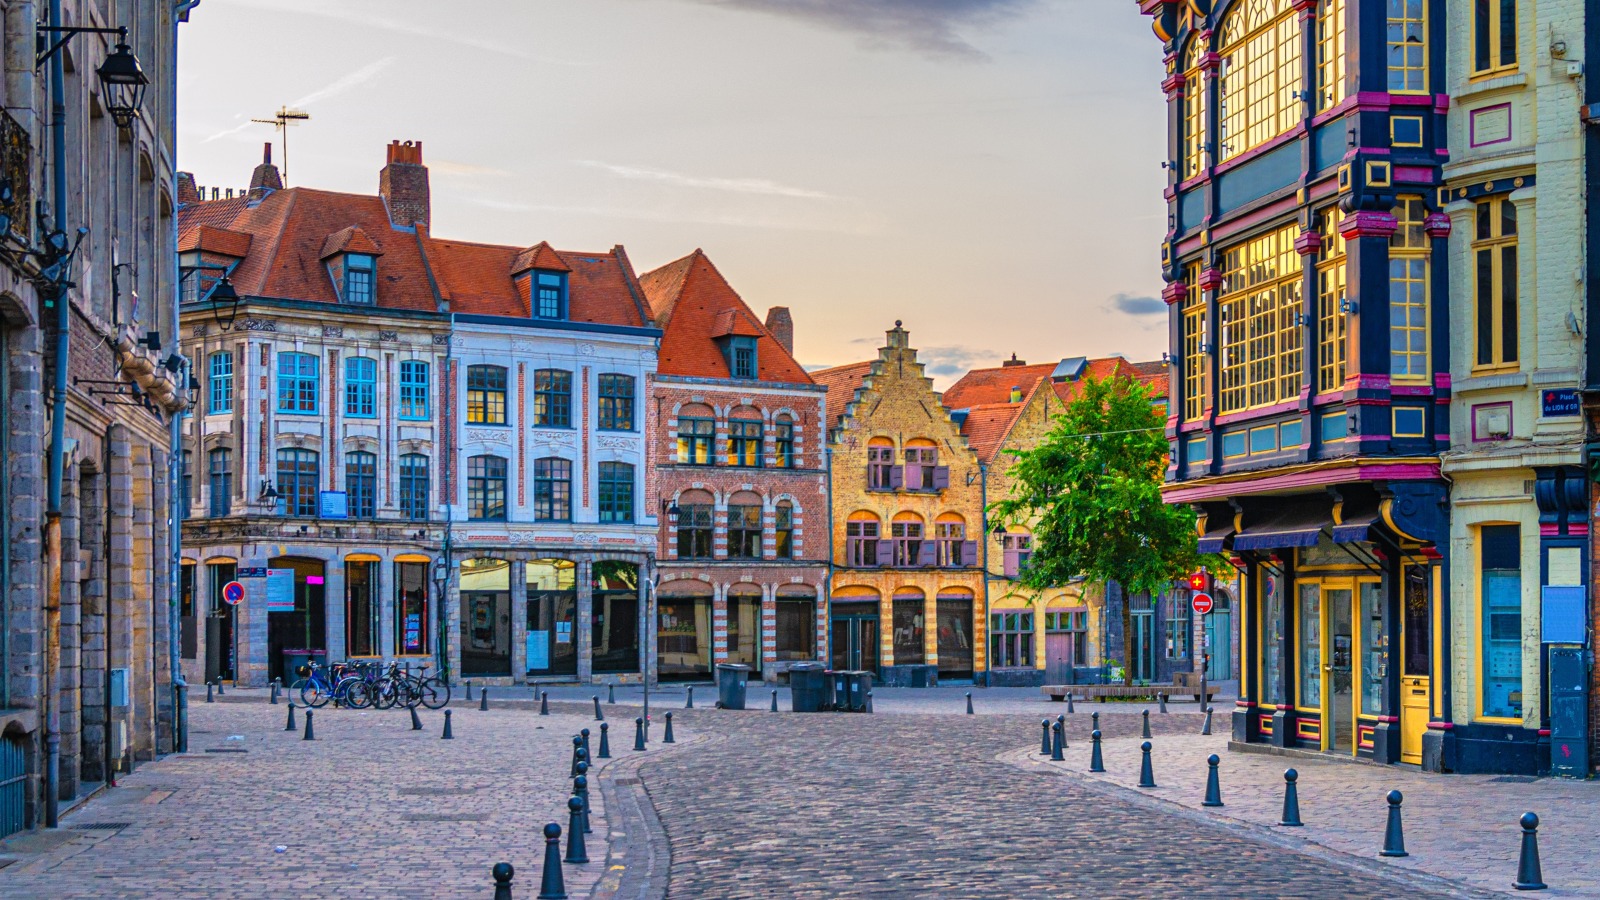 Vieux Lille old town quarter, Hauts-de-France Region, Northern France